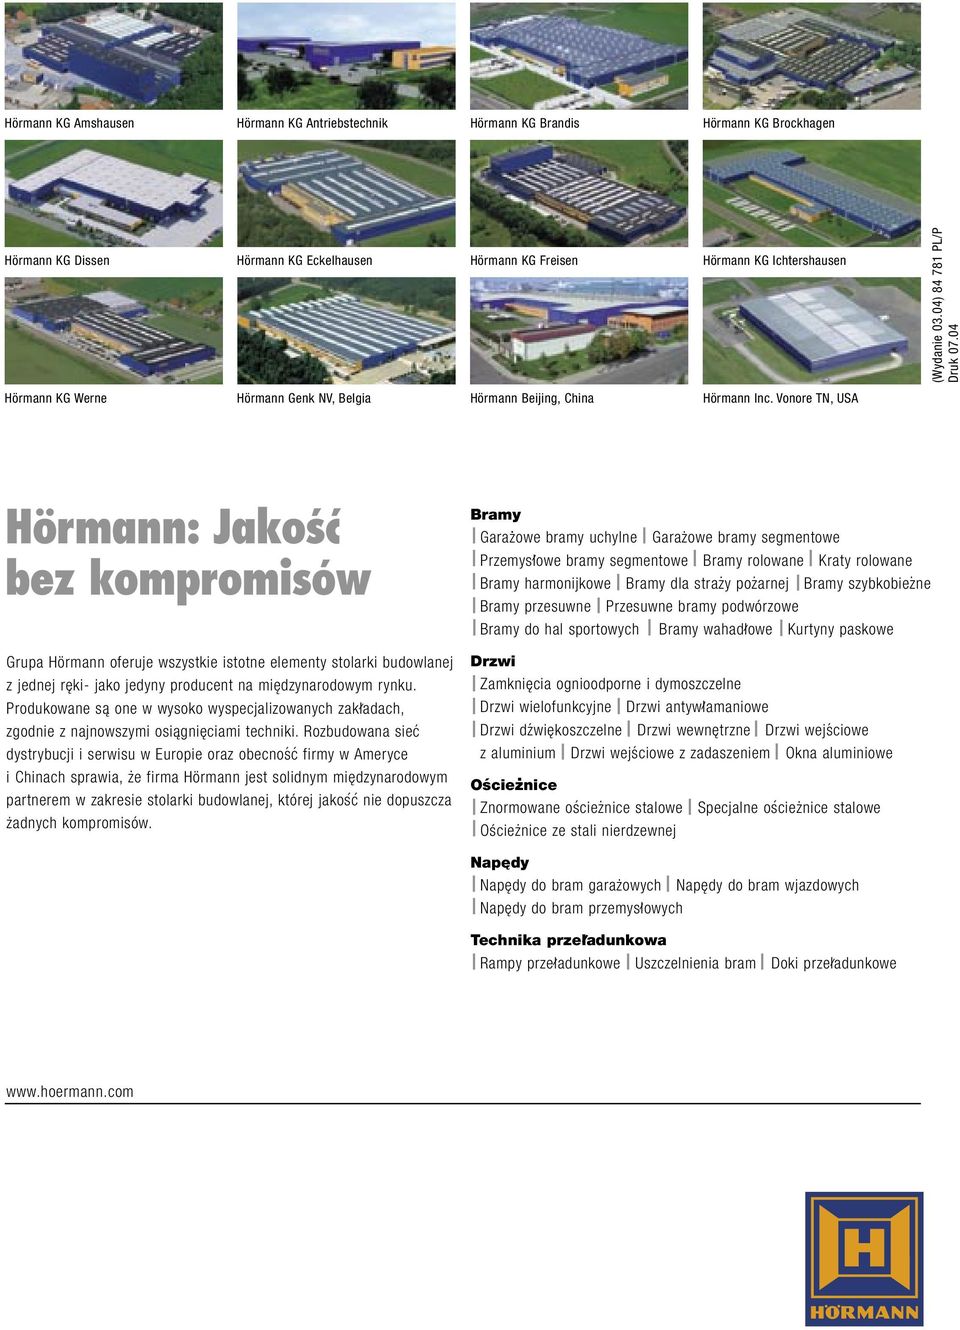 04 Hörmann: Jako ç bez kompromisów Grupa Hörmann oferuje wszystkie istotne elementy stolarki budowlanej z jednej reki- jako jedyny producent na miedzynarodowym rynku.